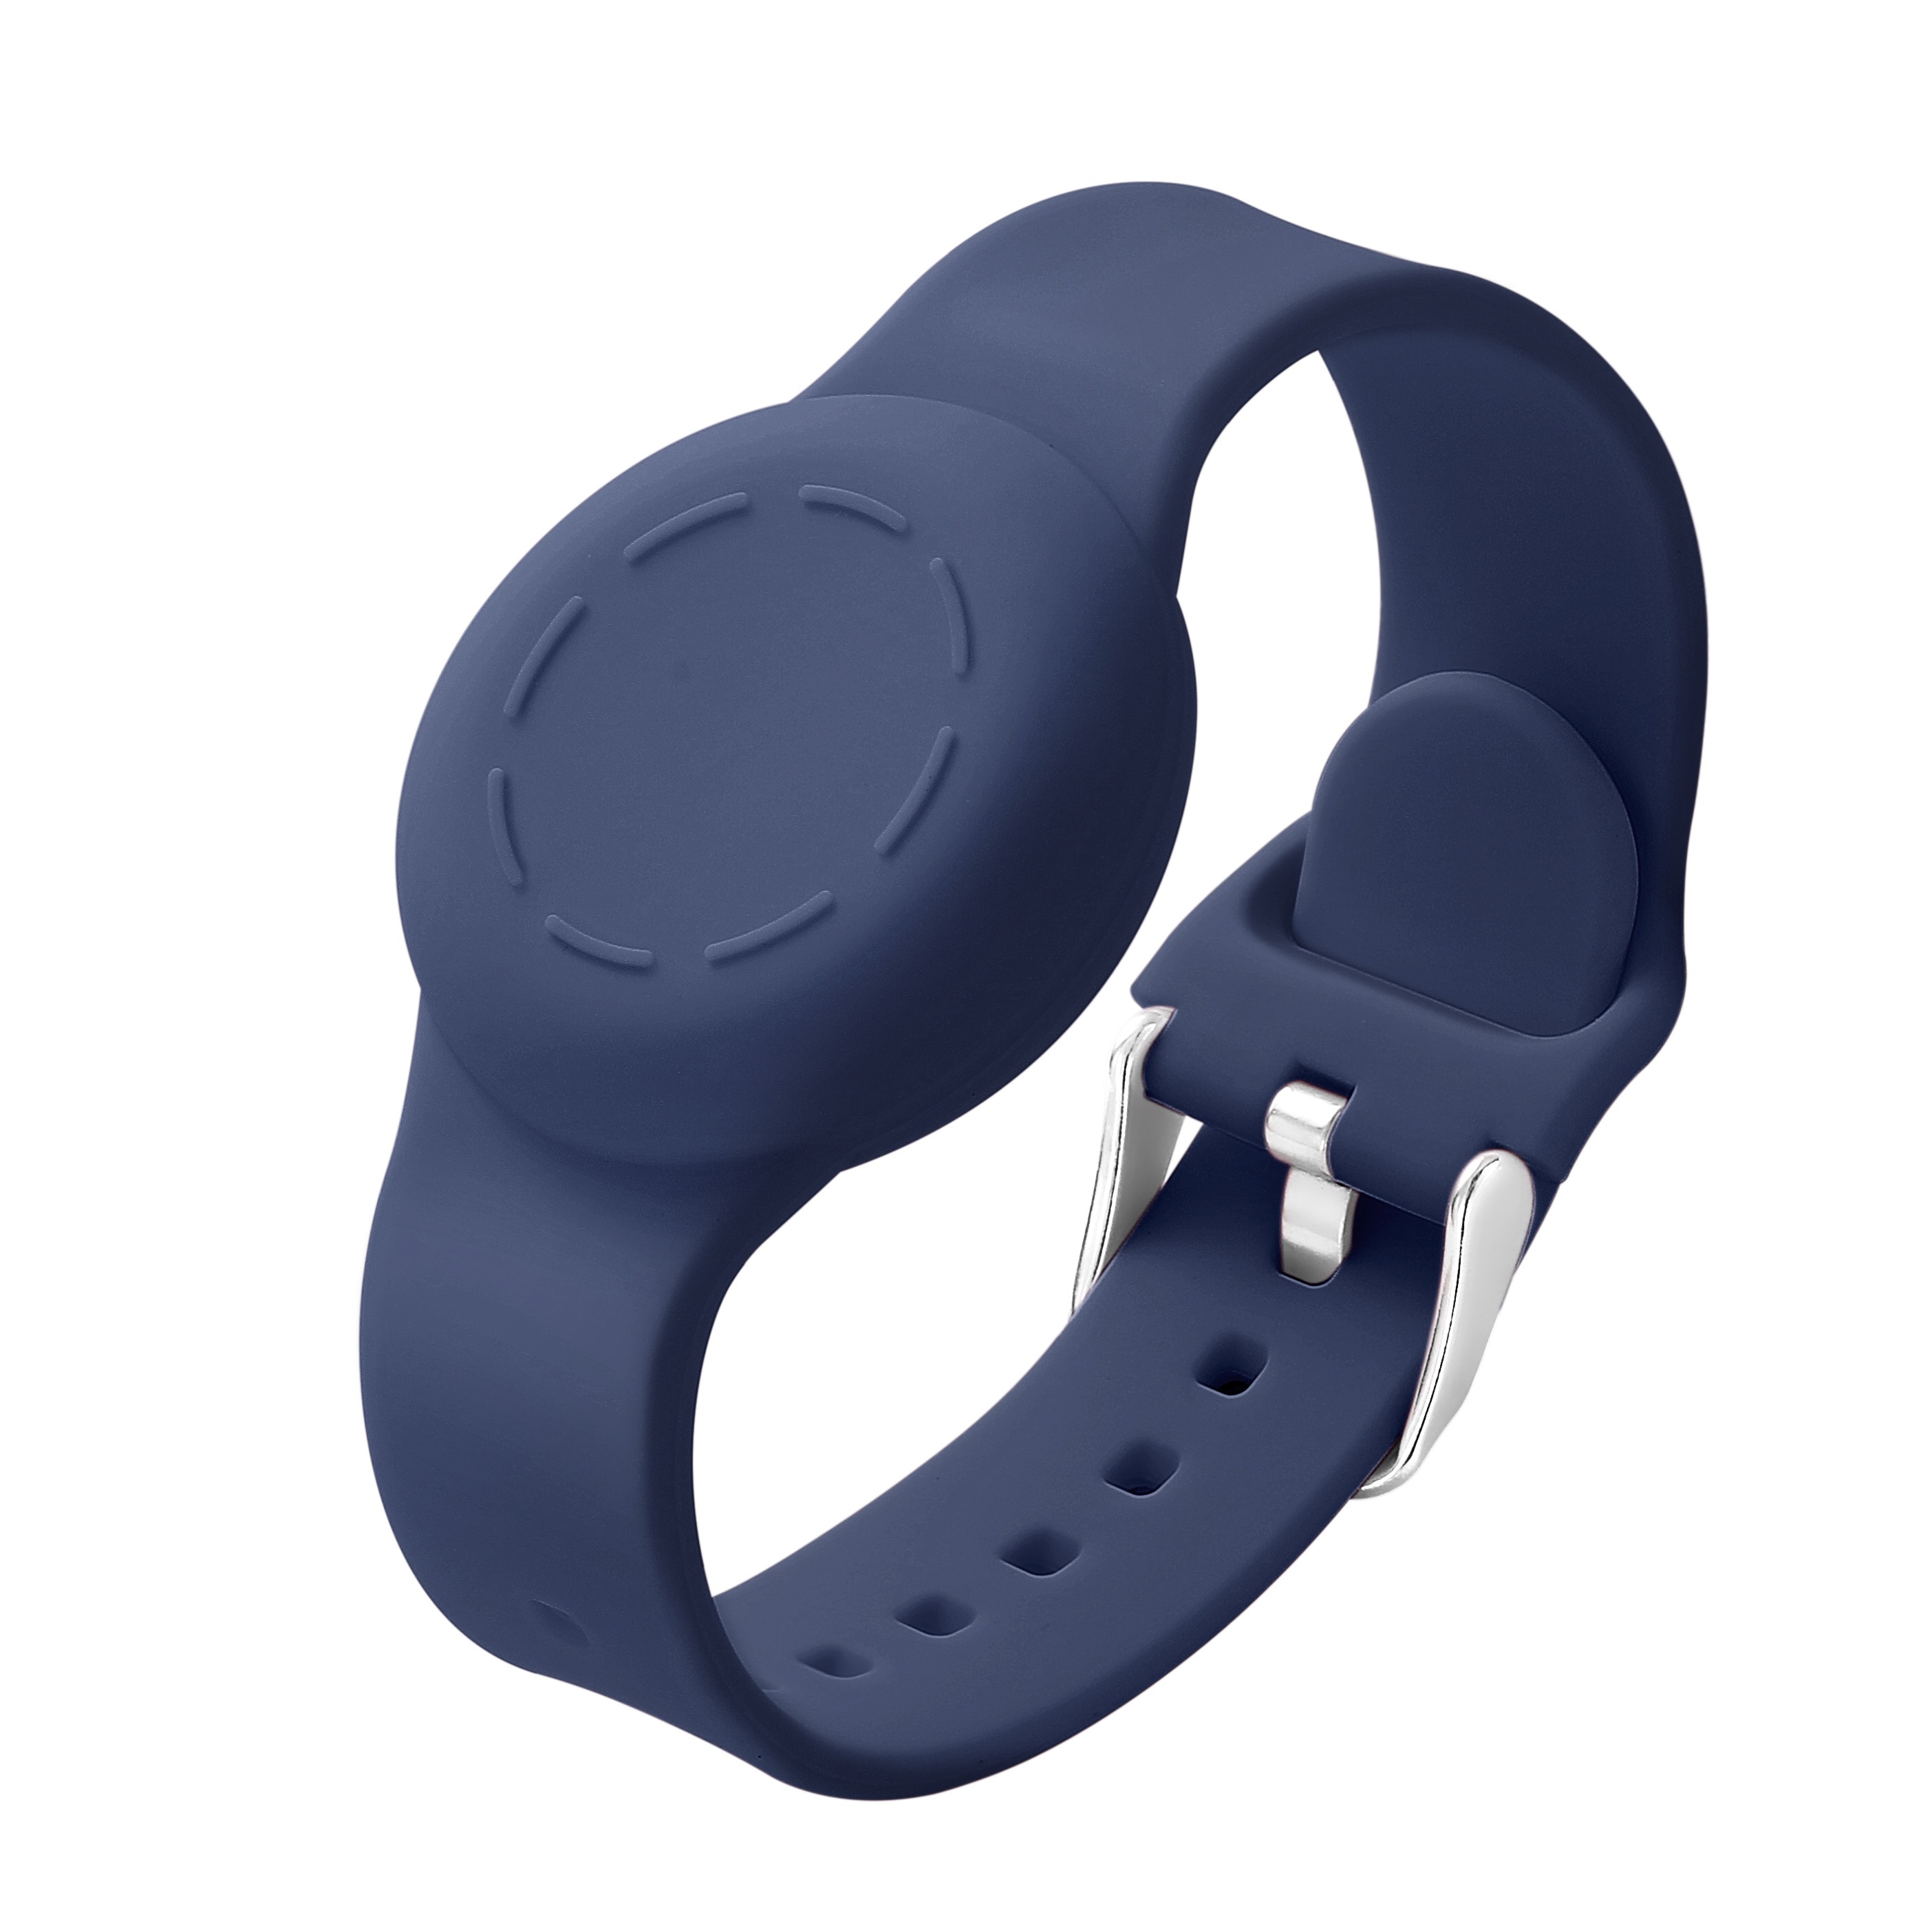  Pulsera para niños compatible con Apple AirTag, funda  protectora para Air Tag GPS Tracker con pulsera de nailon, correa de reloj  ajustable antipérdida para niños pequeños mayores (azul) : Electrónica